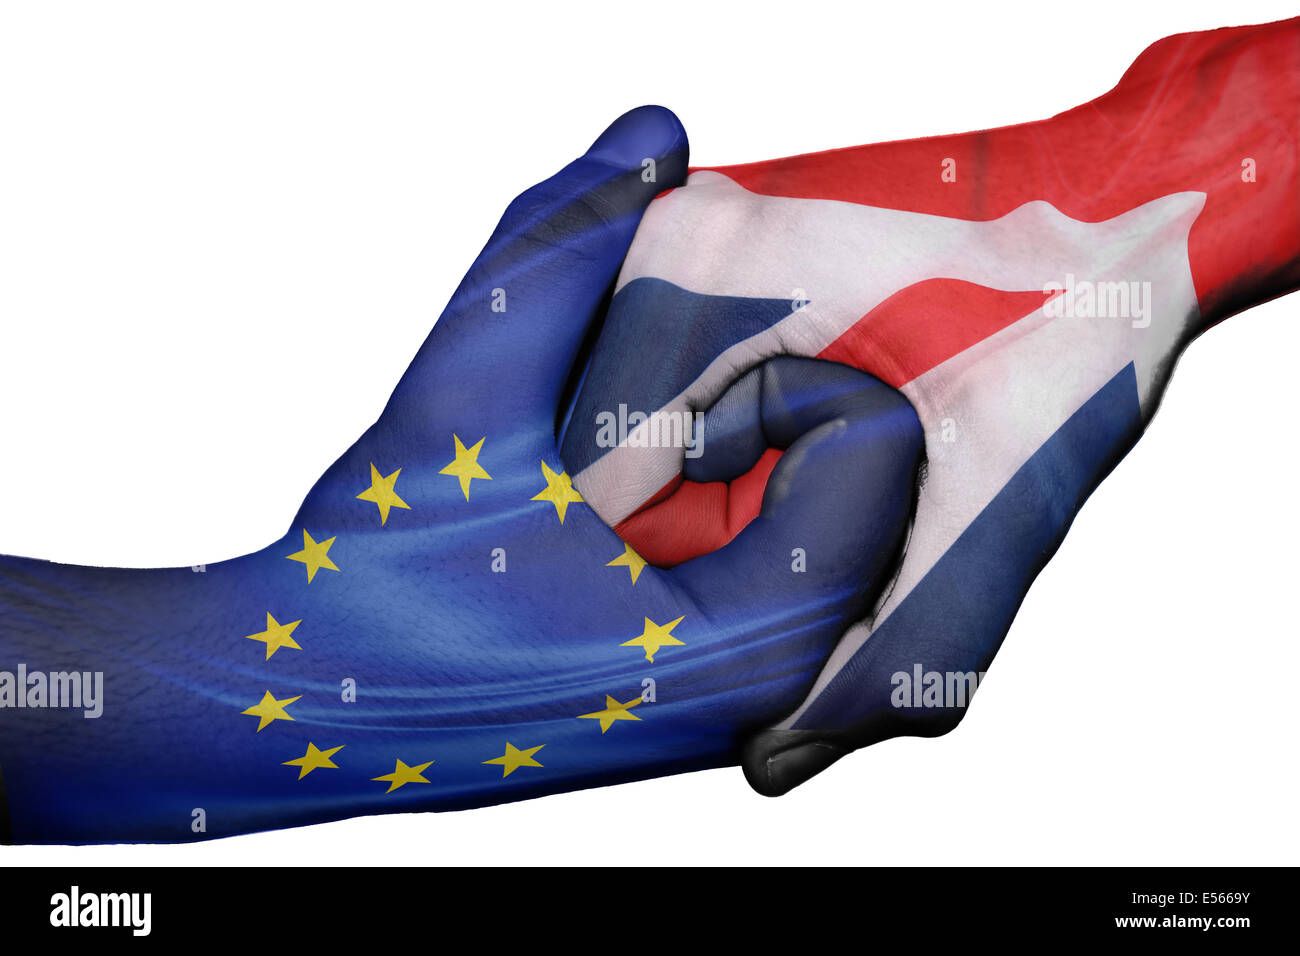 Handshake diplomatiche tra paesi: bandiere di Unione europea e Gran Bretagna sovradipinta le due mani Foto Stock